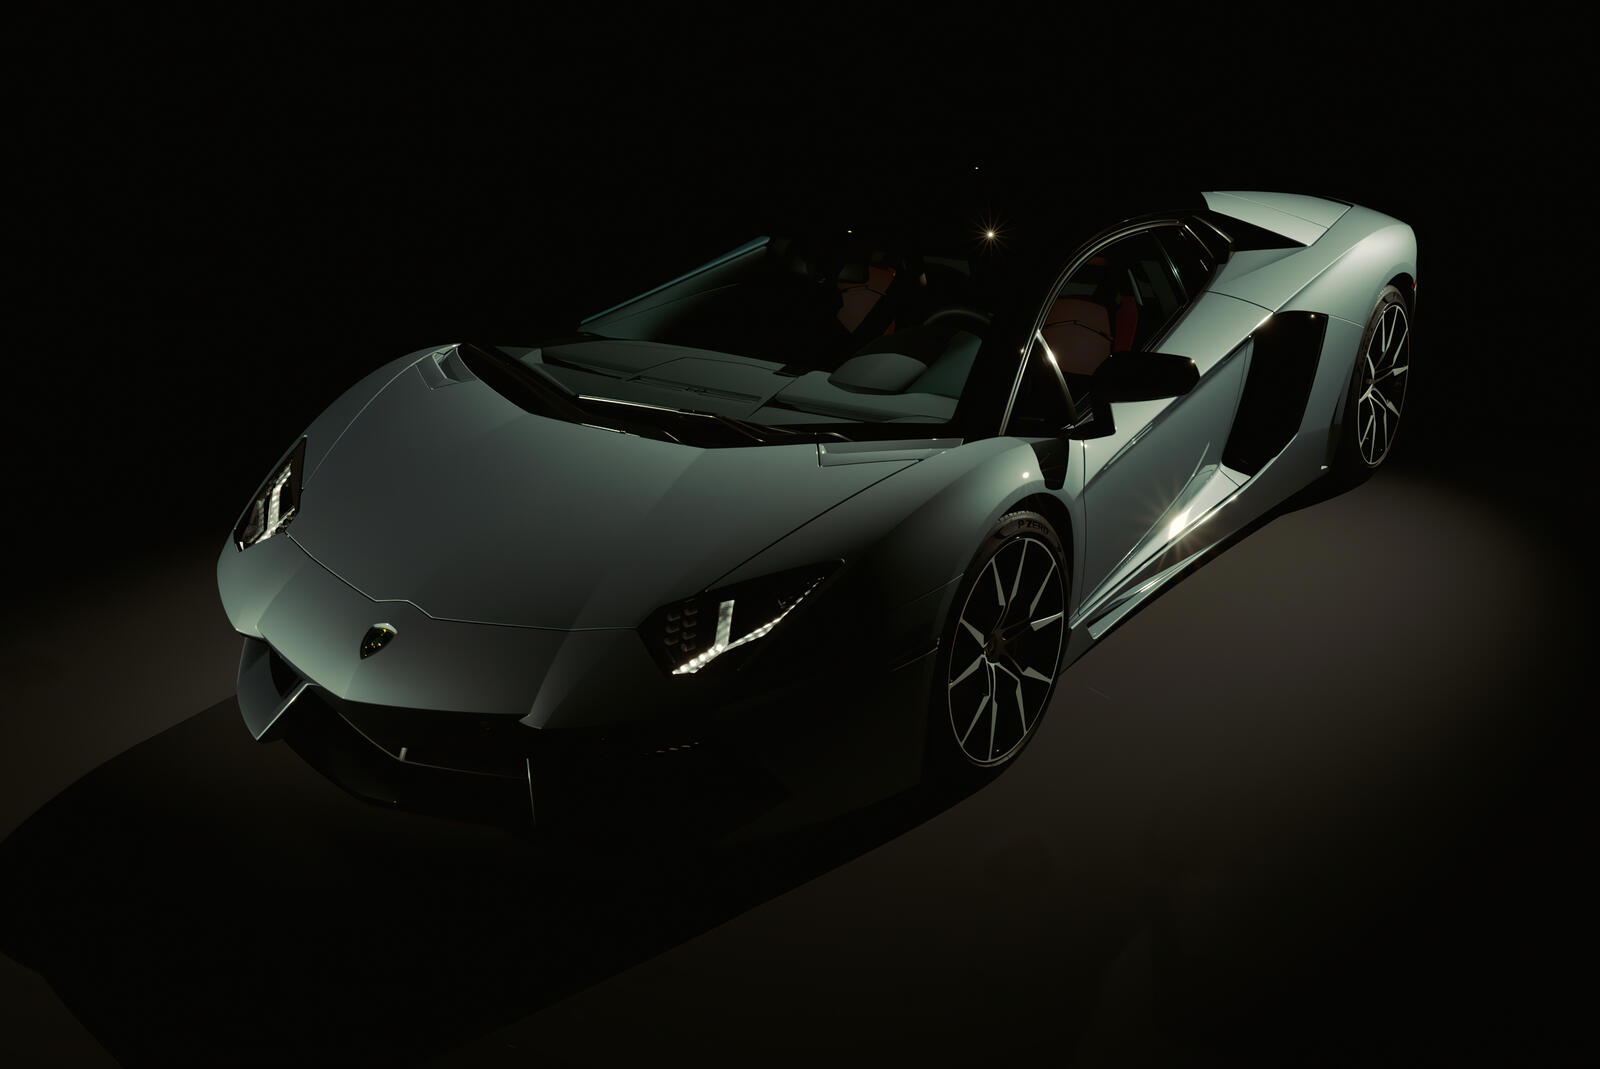 Free photo Lamborghini Aventador in a dark room.